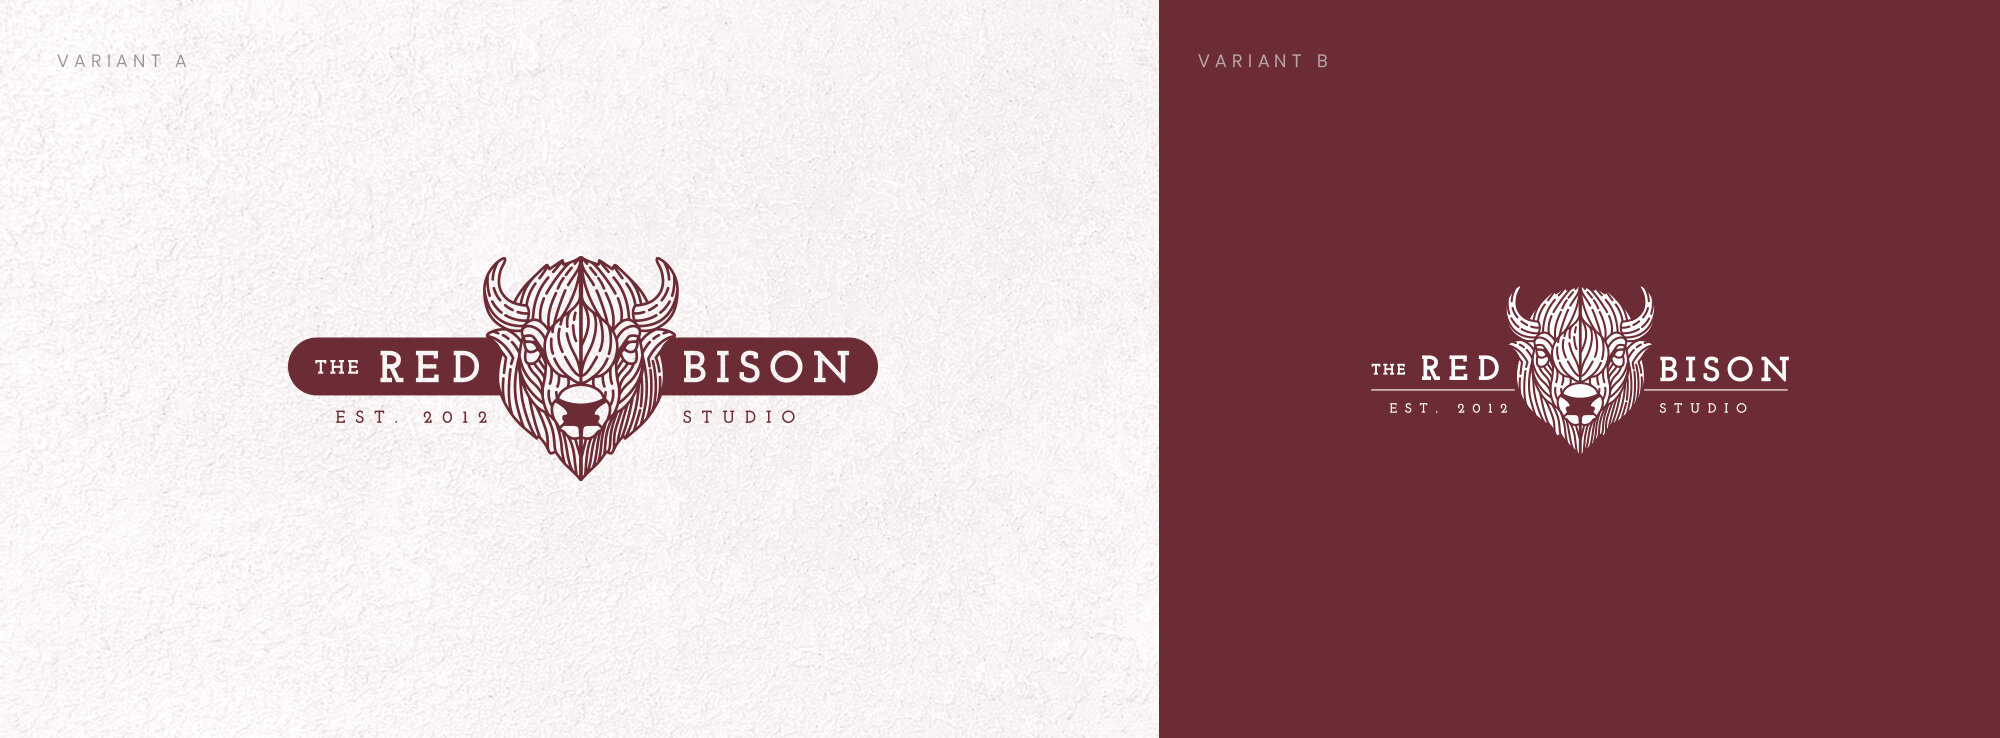 Red Bison Studio Red Bison Logo Design | Branding